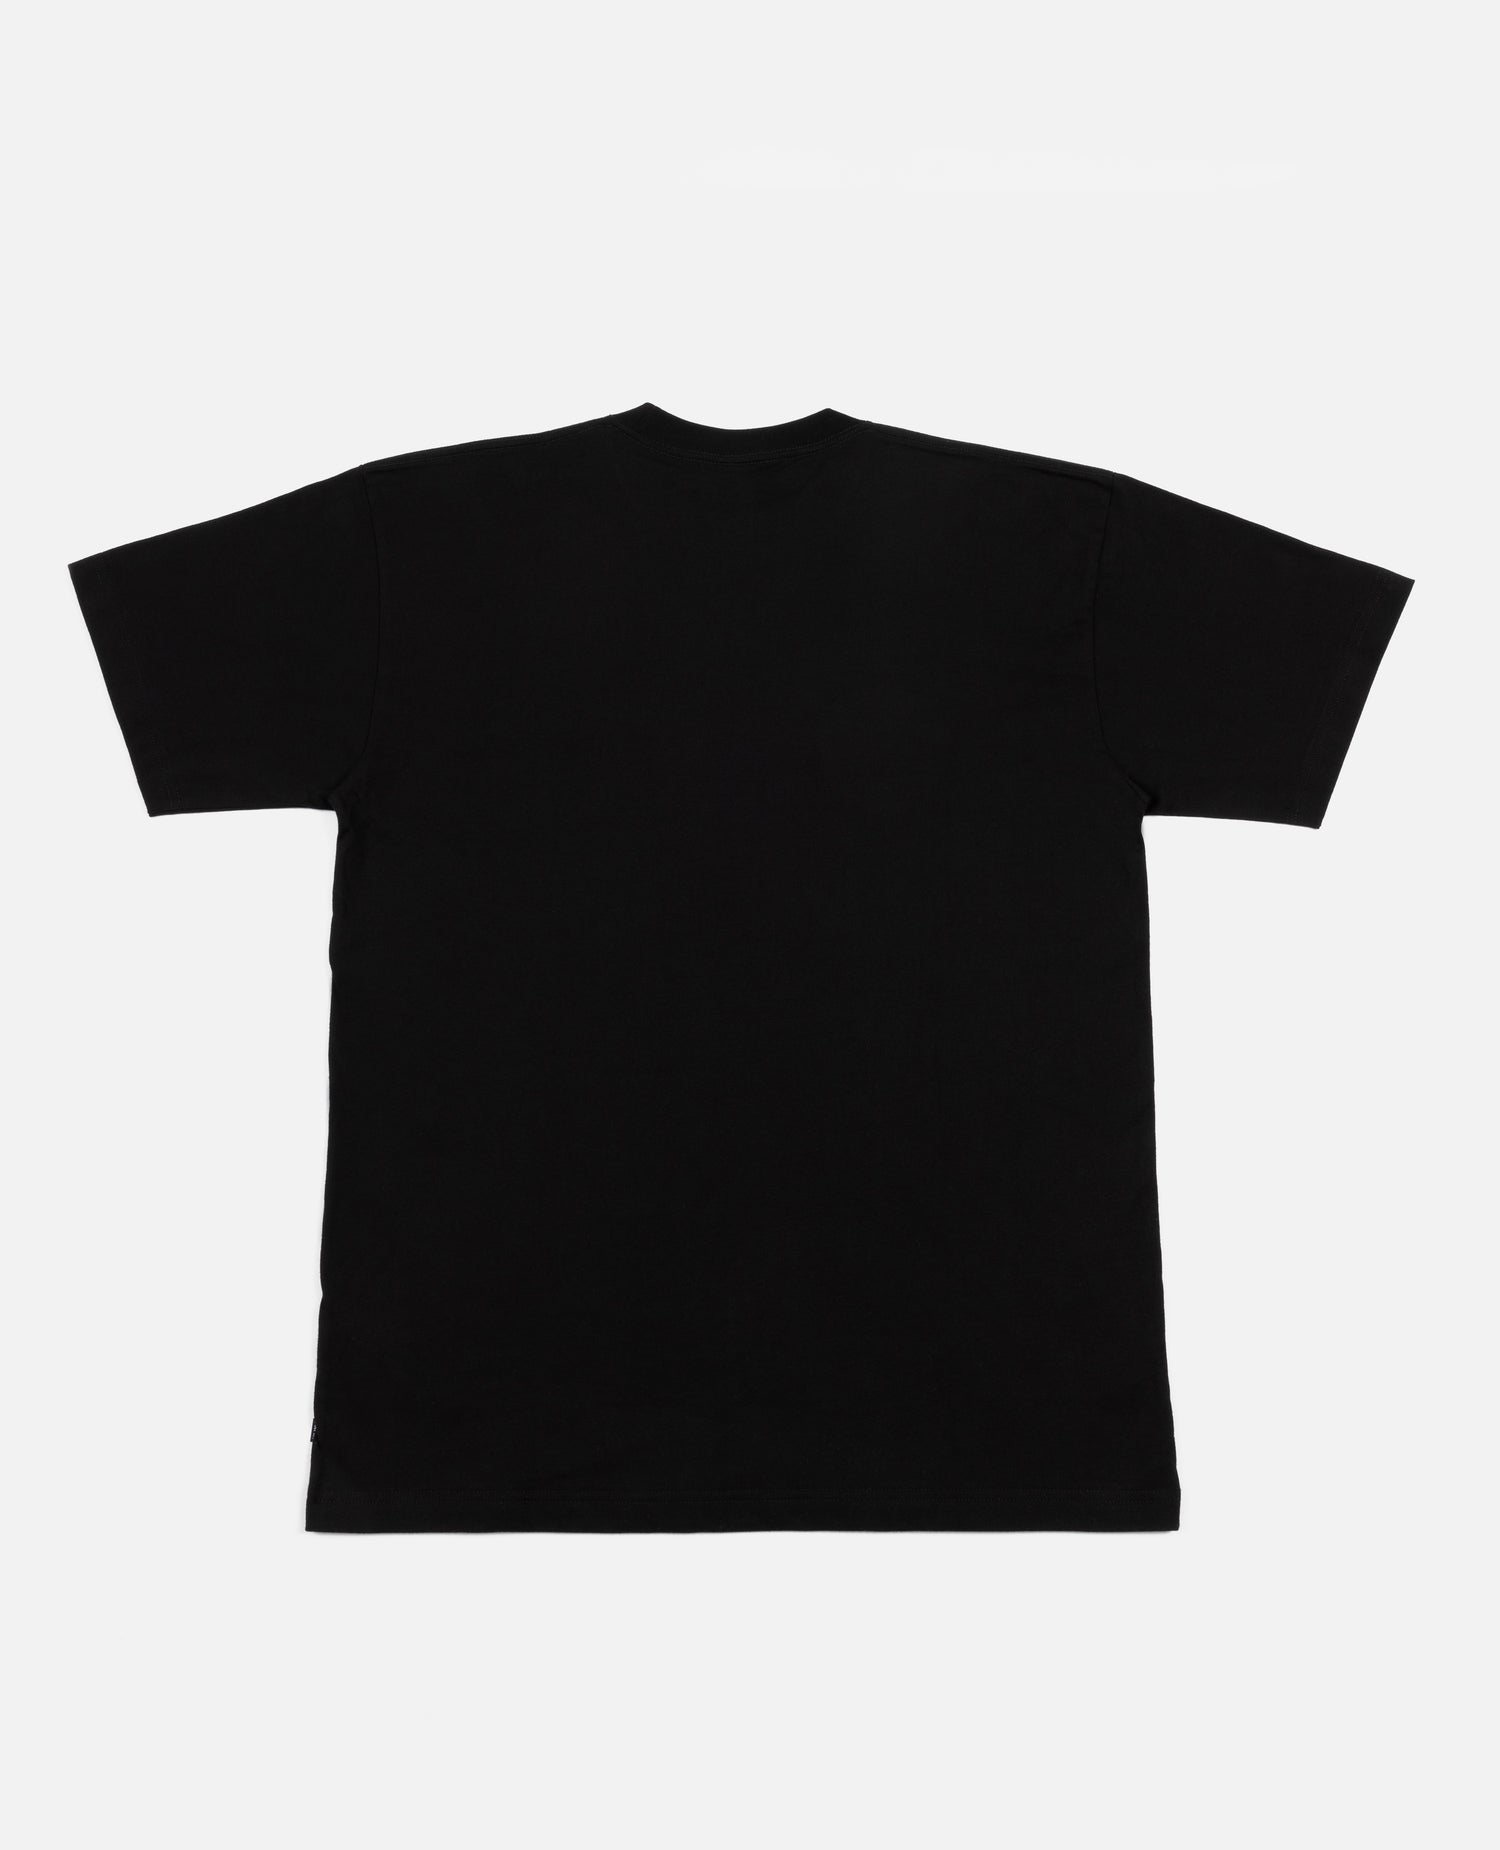 T-shirt chats Patta (noir)